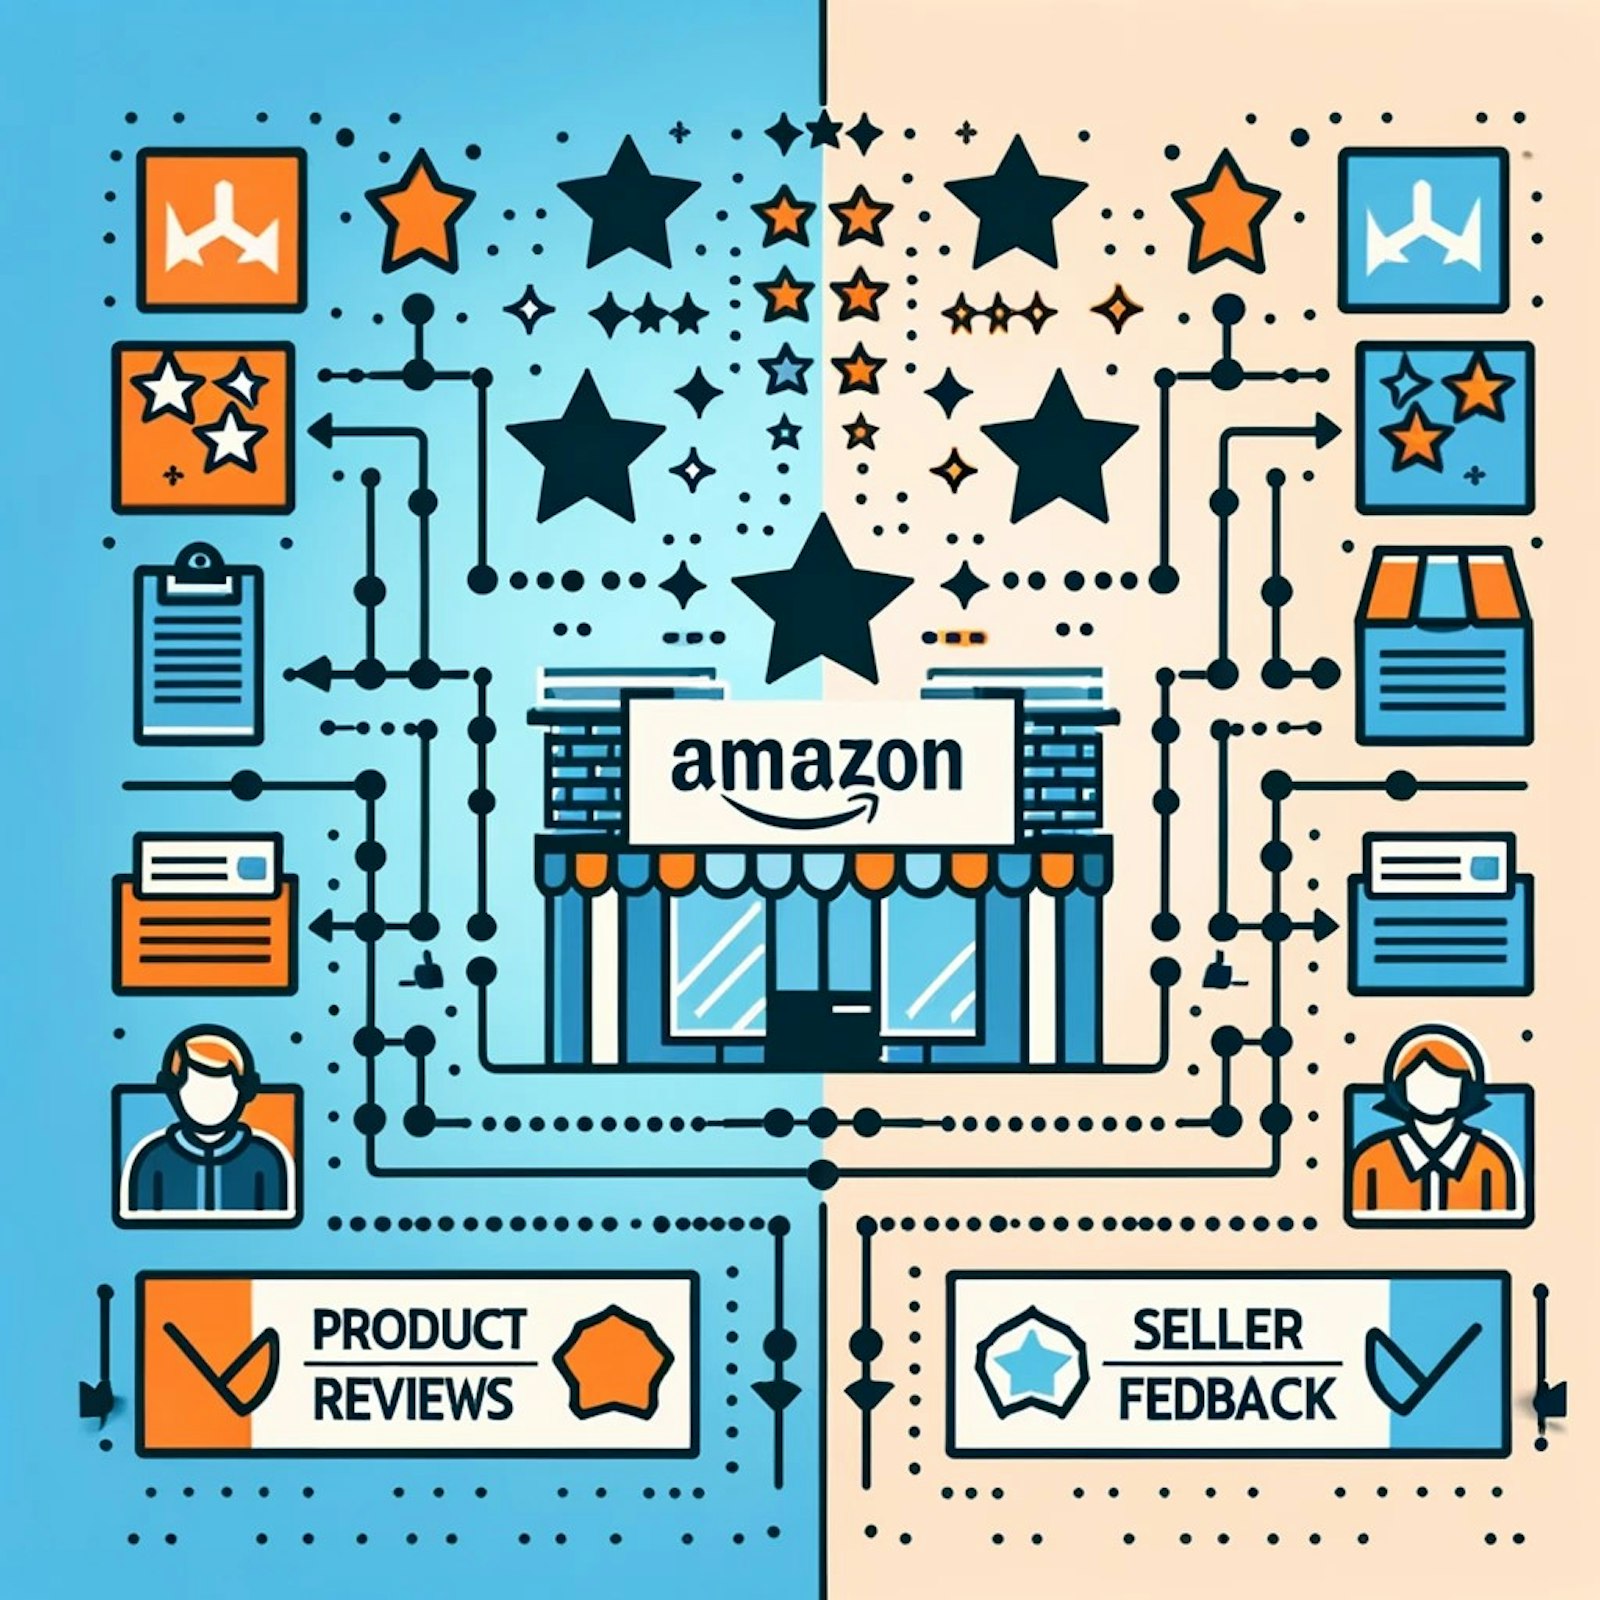 Graphique représentant les avis produits et les feedbacks des vendeurs sur Amazon, soulignant les différences et l'importance de chaque type de commentaire.